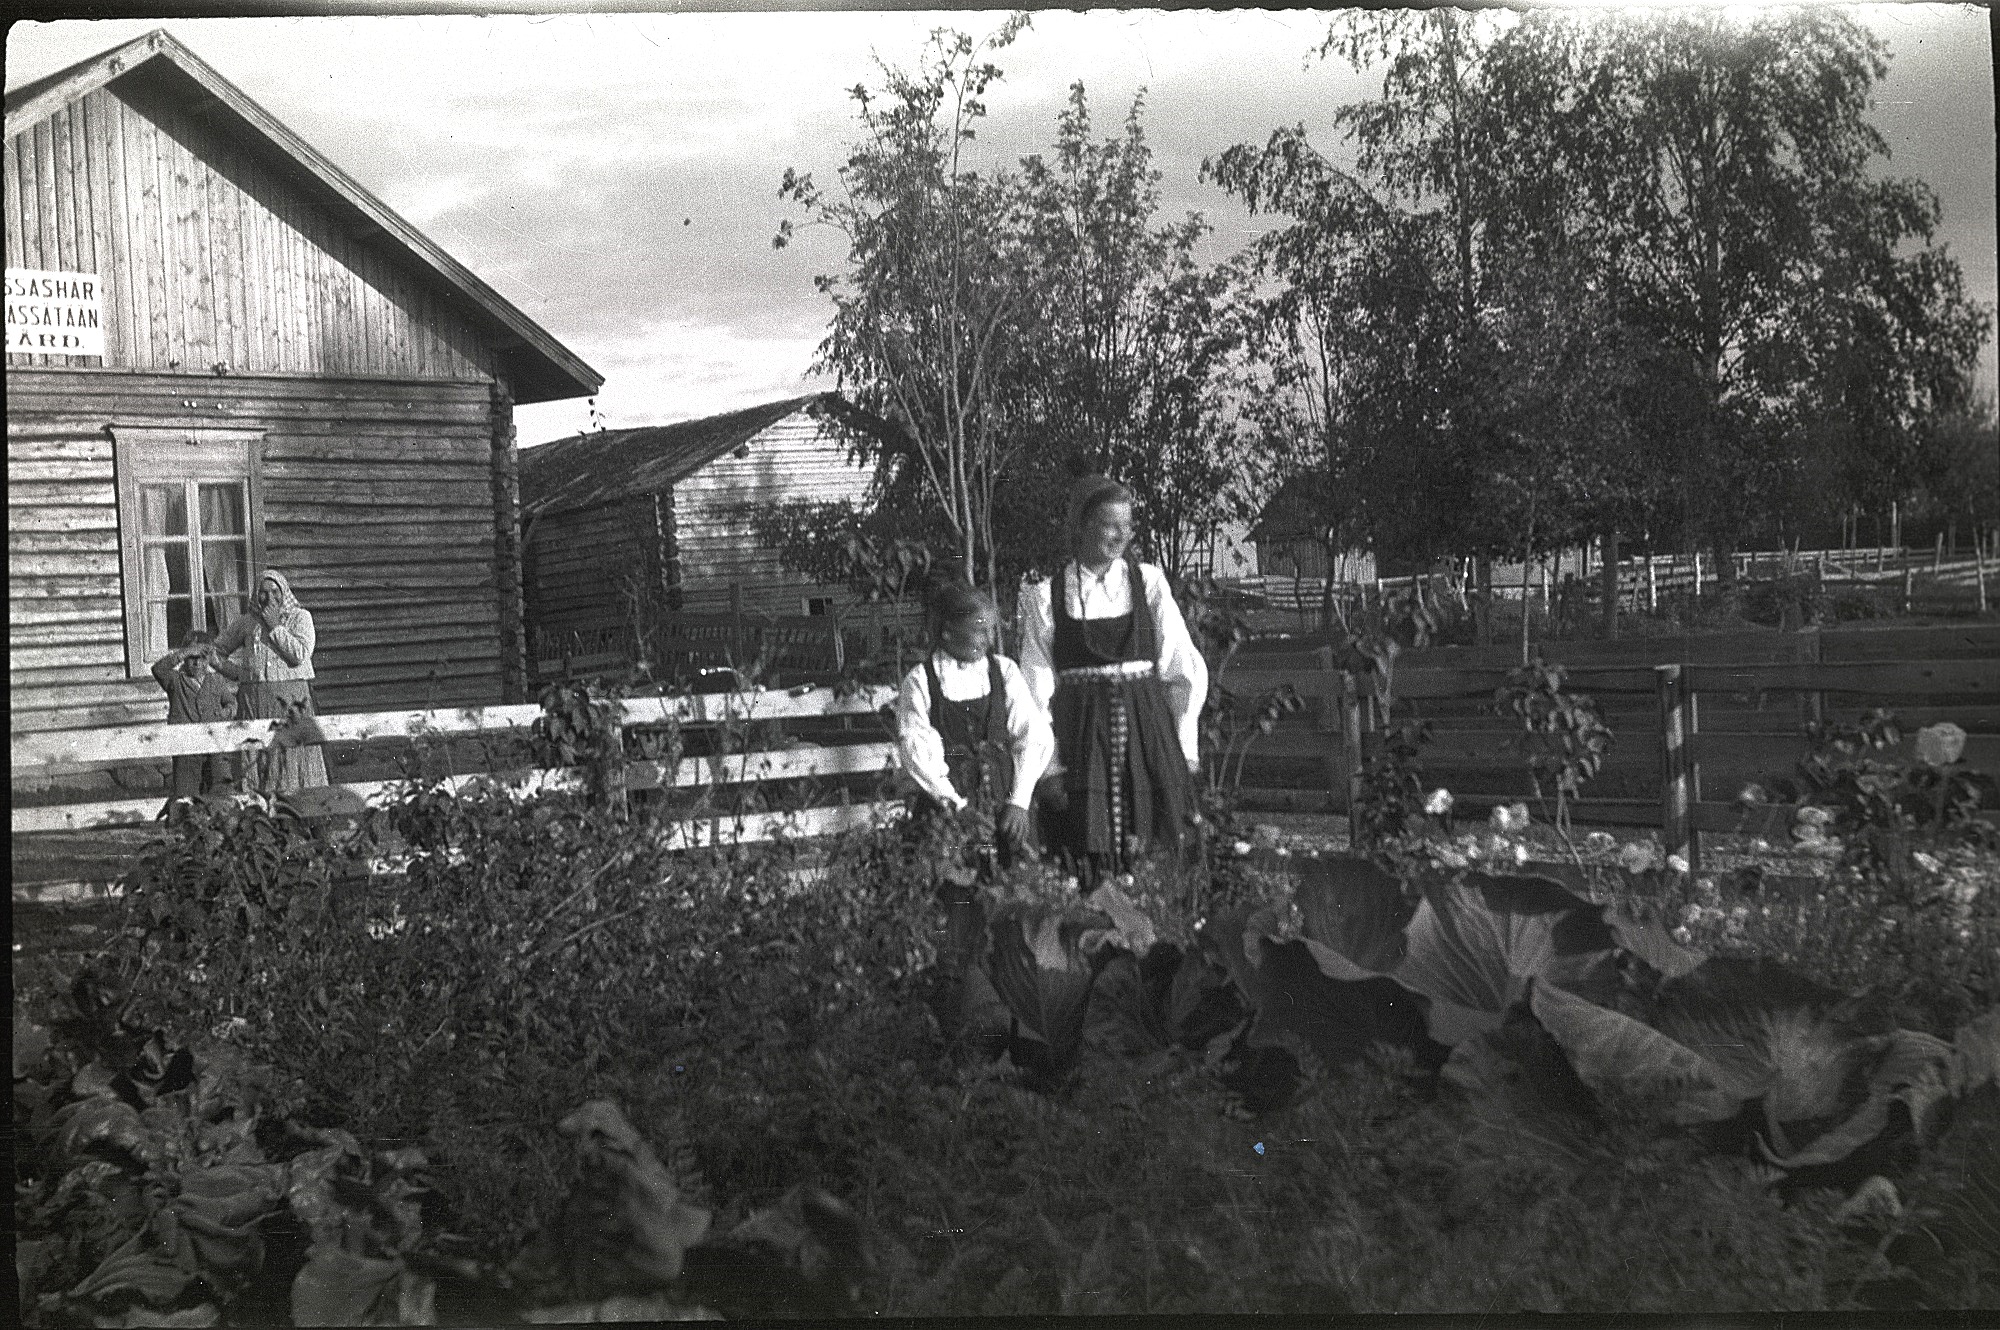 Här systrarna Astrid Nygård, gift Ingves och Anni Nygård, gift Klemets i sitt klubbland. Möjligtvis är det broder Thure med mamma Maria som stå bakom planket. På skylten på väggen står det: "Tyger pressas här".